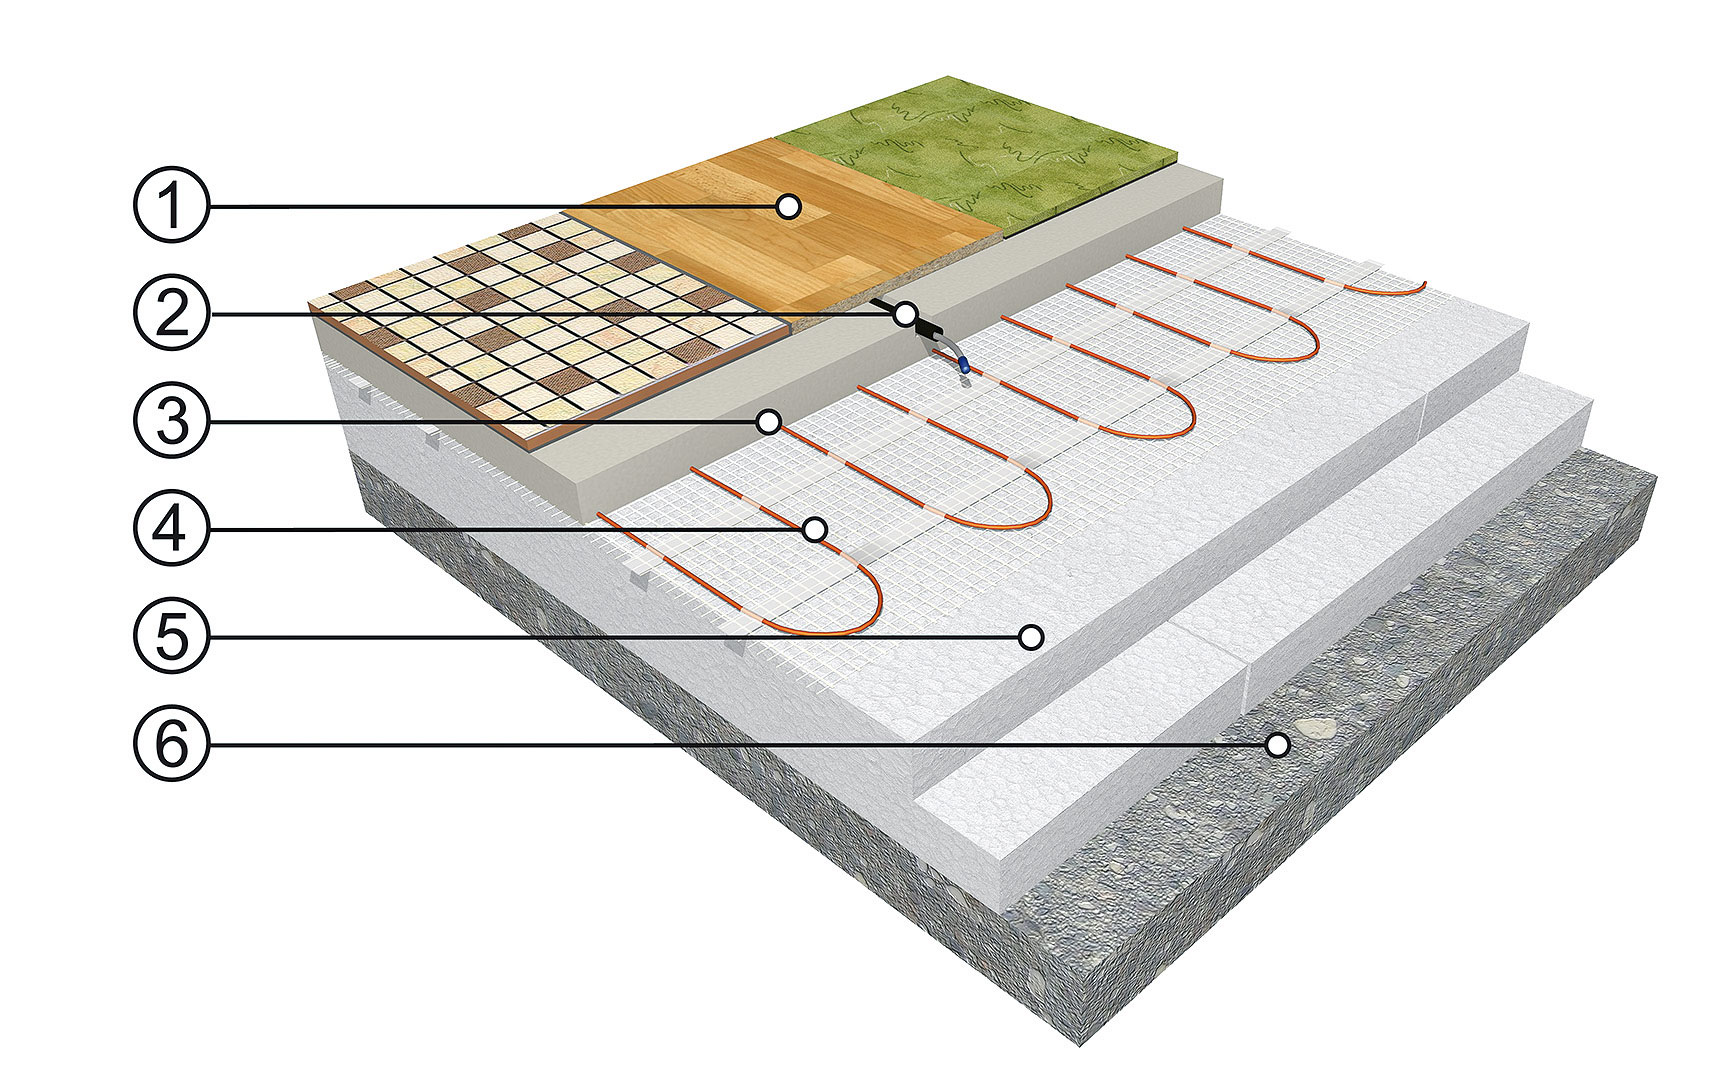 Skladba podlahových vrstiev pri elektrickom podlahovom vykurovaní s anhydritovou hmotou: 1 – nášľapná vrstva (napr. dlažba), 2 – podlahová (limitačná) sonda v ochrannej trubici (tzv. husí krk), 3 – nosná anhydritová platňa, 4 – vykurovacia rohož (kábel) ECOFLOOR®, 5 – tepelná izolácia, 6 – podklad (betónová platňa).